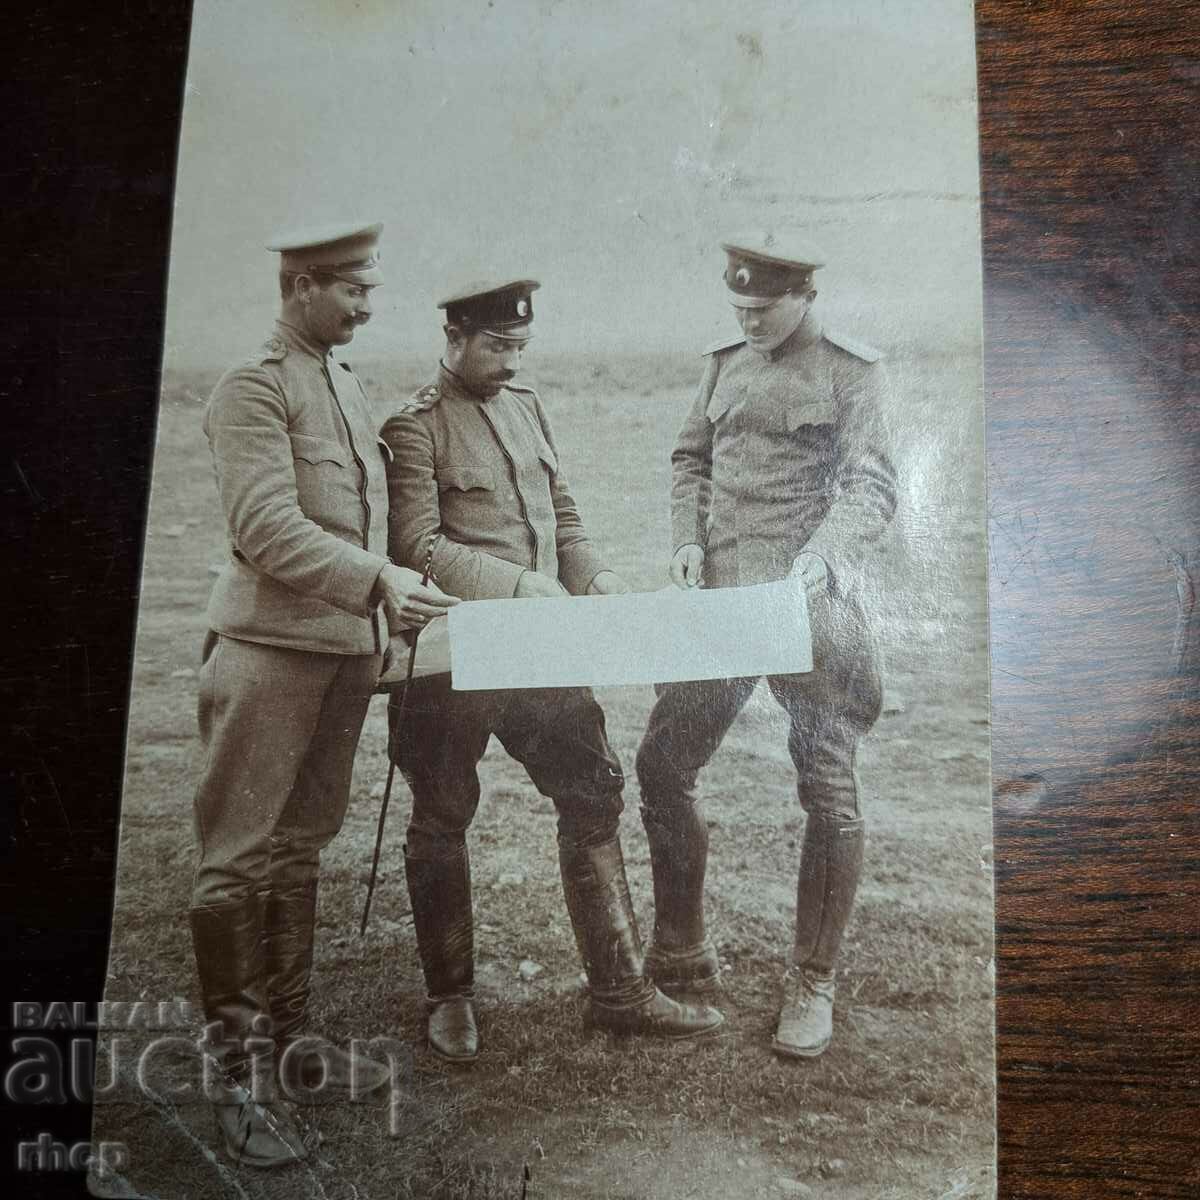 Ofițeri cu card veche foto militară din Primul Război Mondial